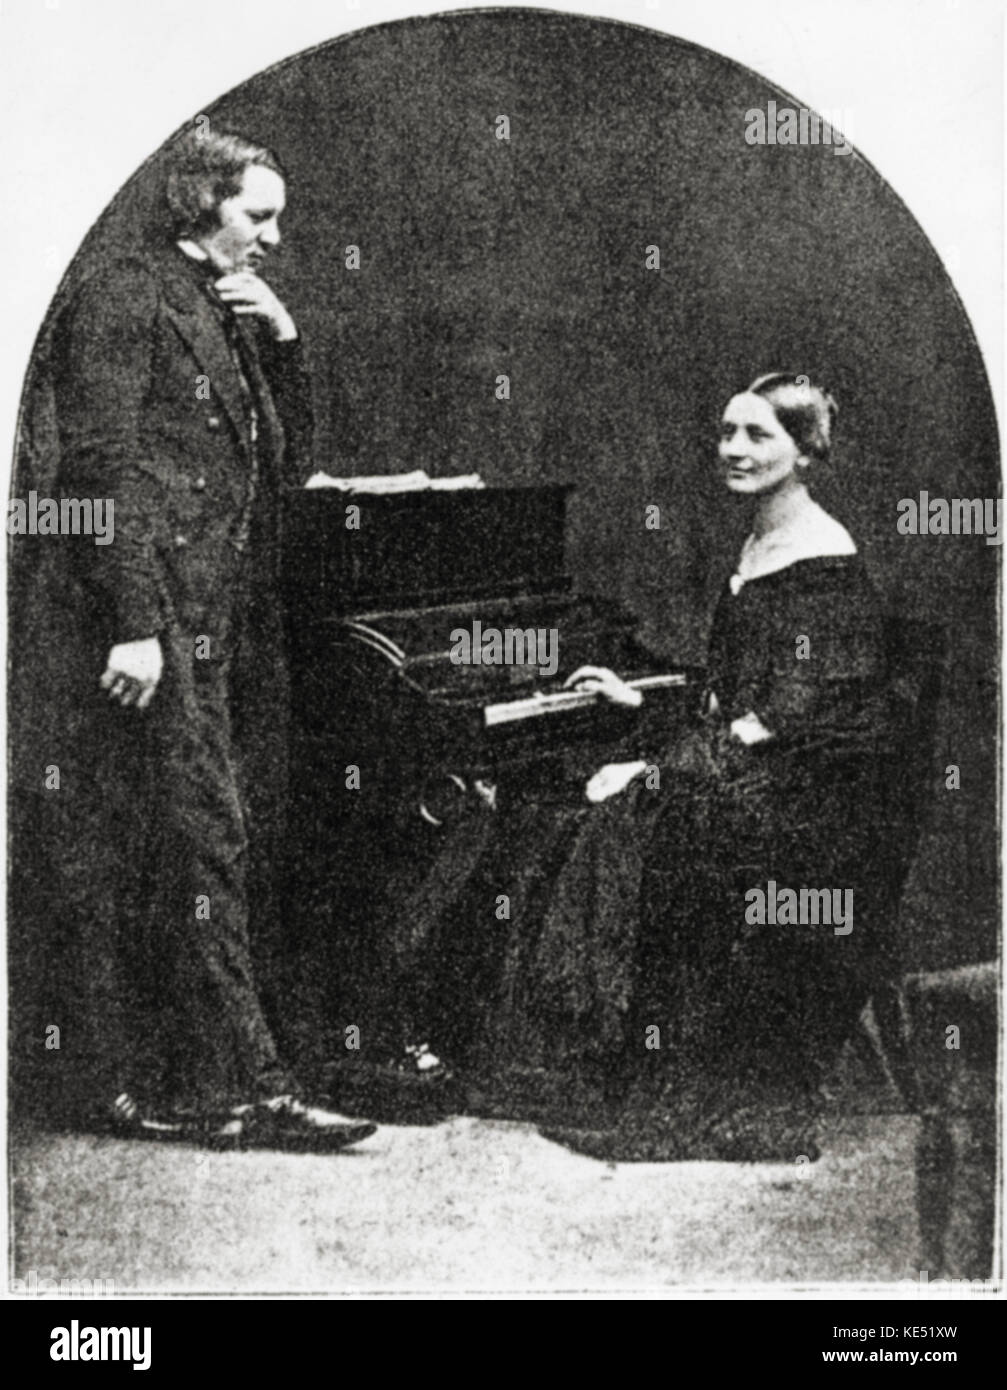 Robert und Clara Schumann, 1850, Hamburg. Daguerreotypie. Clara Schumann: deutsche Pianist und Komponist 1819-1896, verheiratet mit Robert Schumann, Deutscher Komponist, 1810-1856. Stockfoto